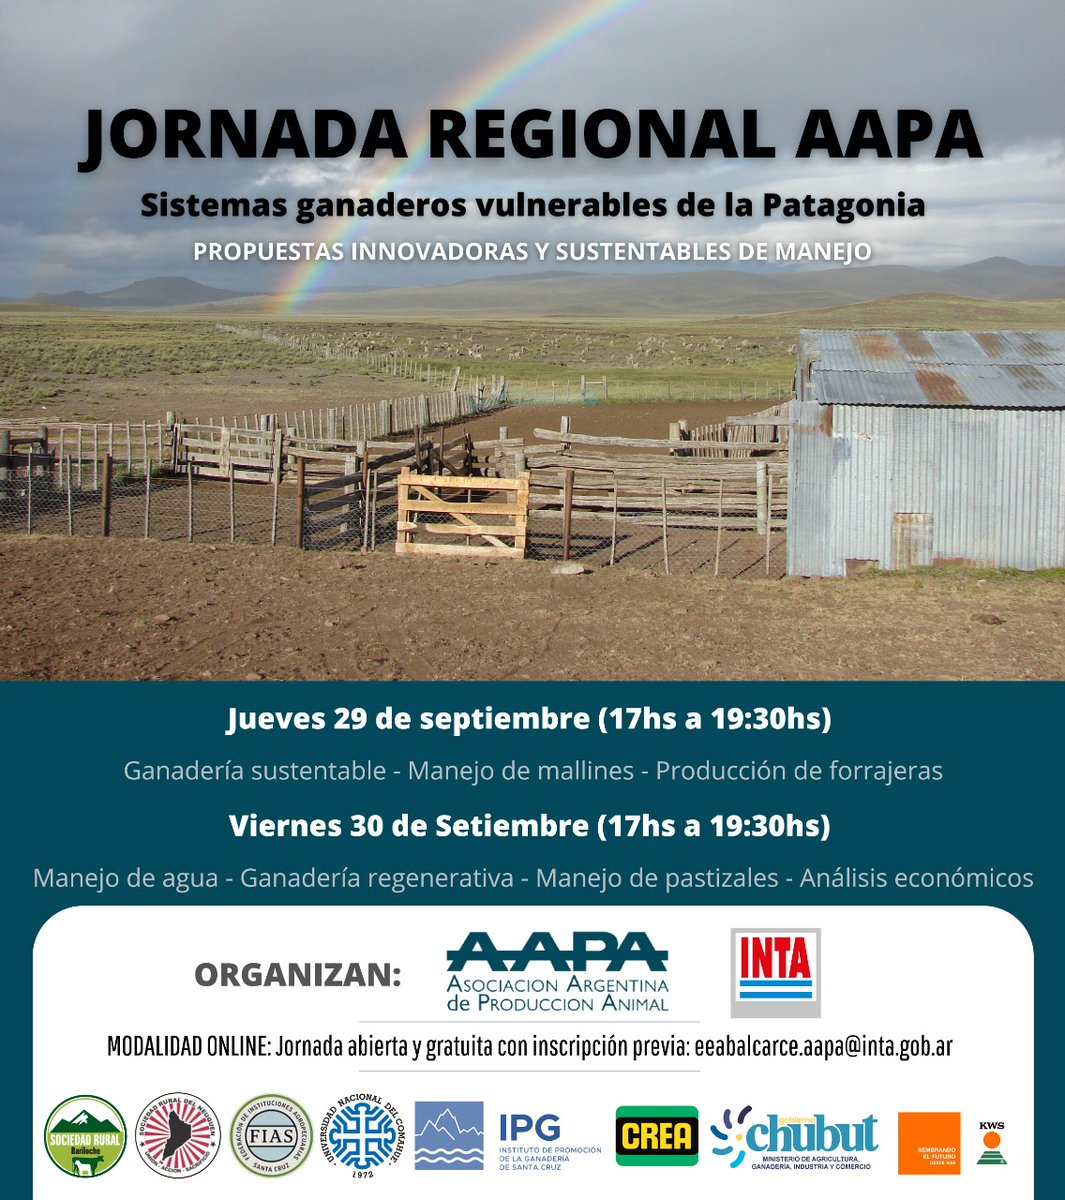 #AgendaINTA Jornada regional: Sistemas ganaderos vulnerables de la Patagonia 📅29 y 30 de septiembre de 17:00 a 19:30 hs Jornada virtual y gratuita Inscripciones👉bit.ly/3BUKFJ9